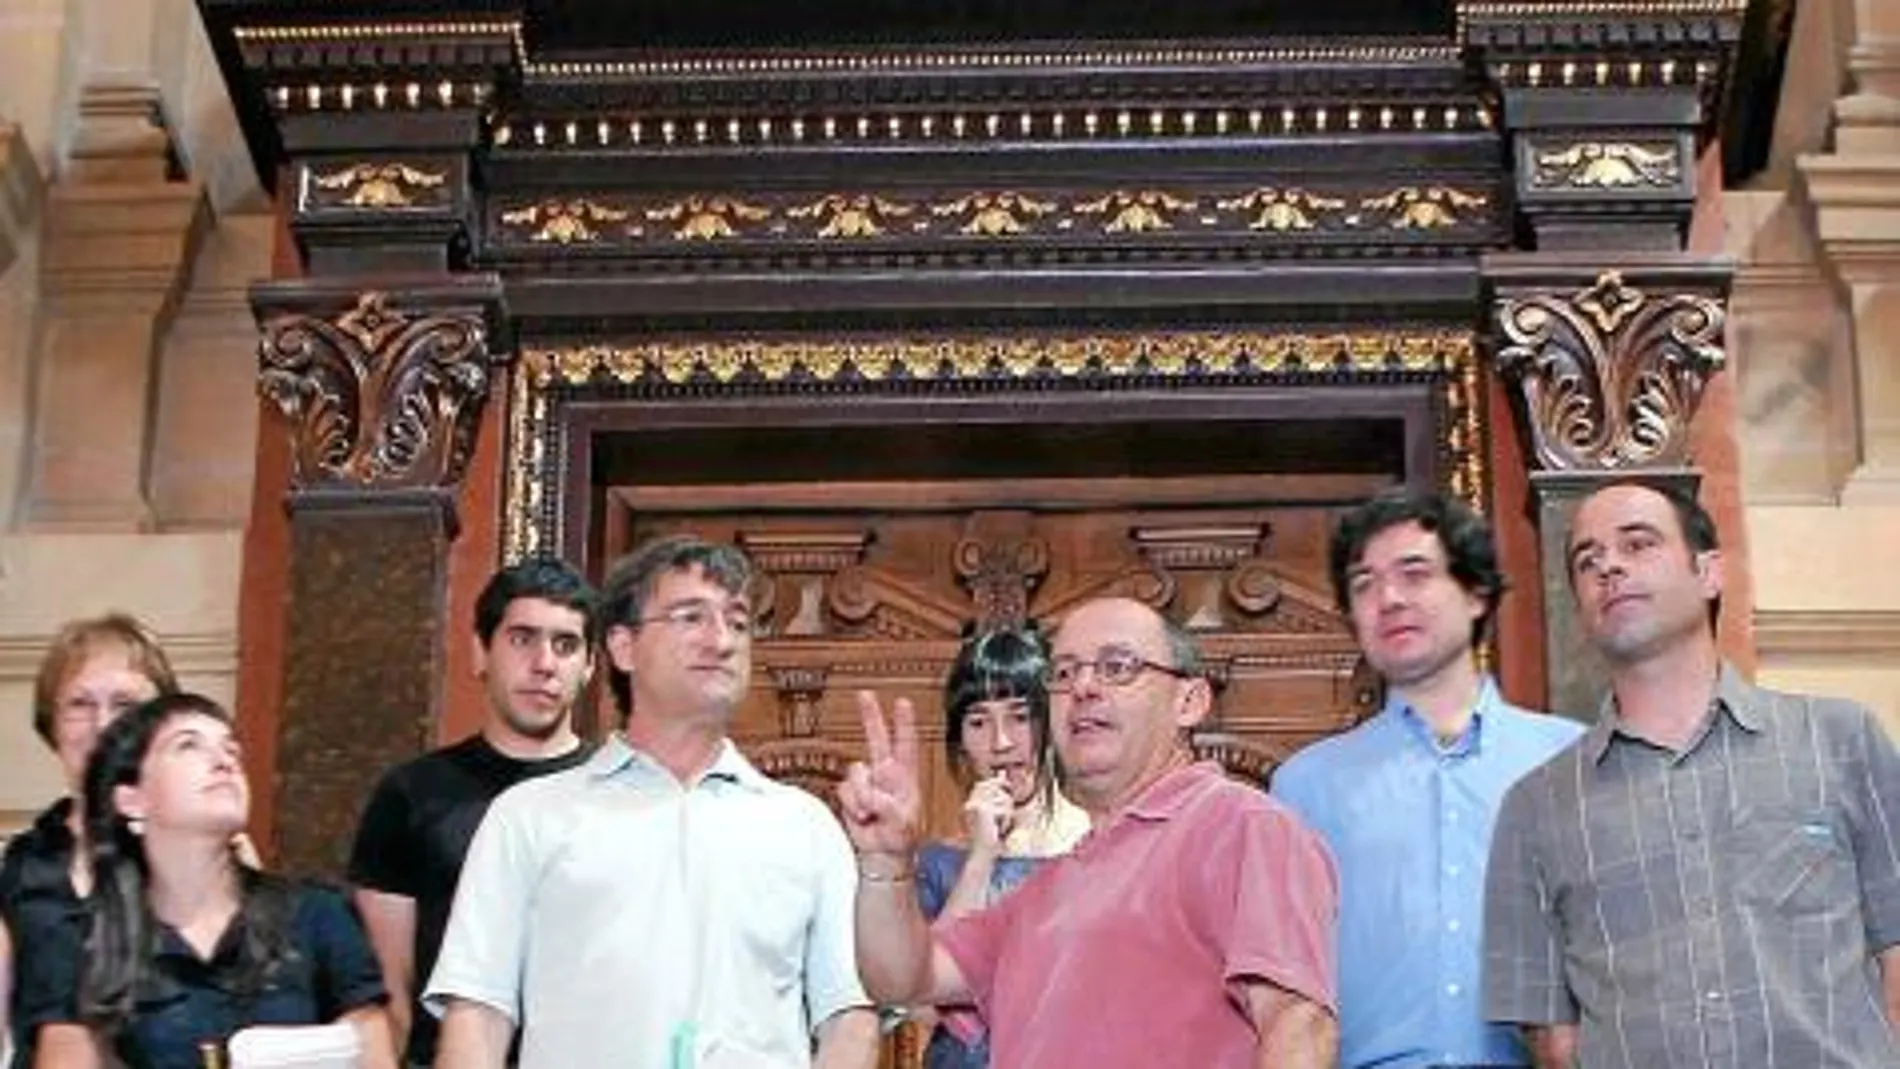 El nuevo equipo de gobierno municipal en San Sebastián, ayer en su presentación en sociedad, baraja prohibir el paso a los escoltas